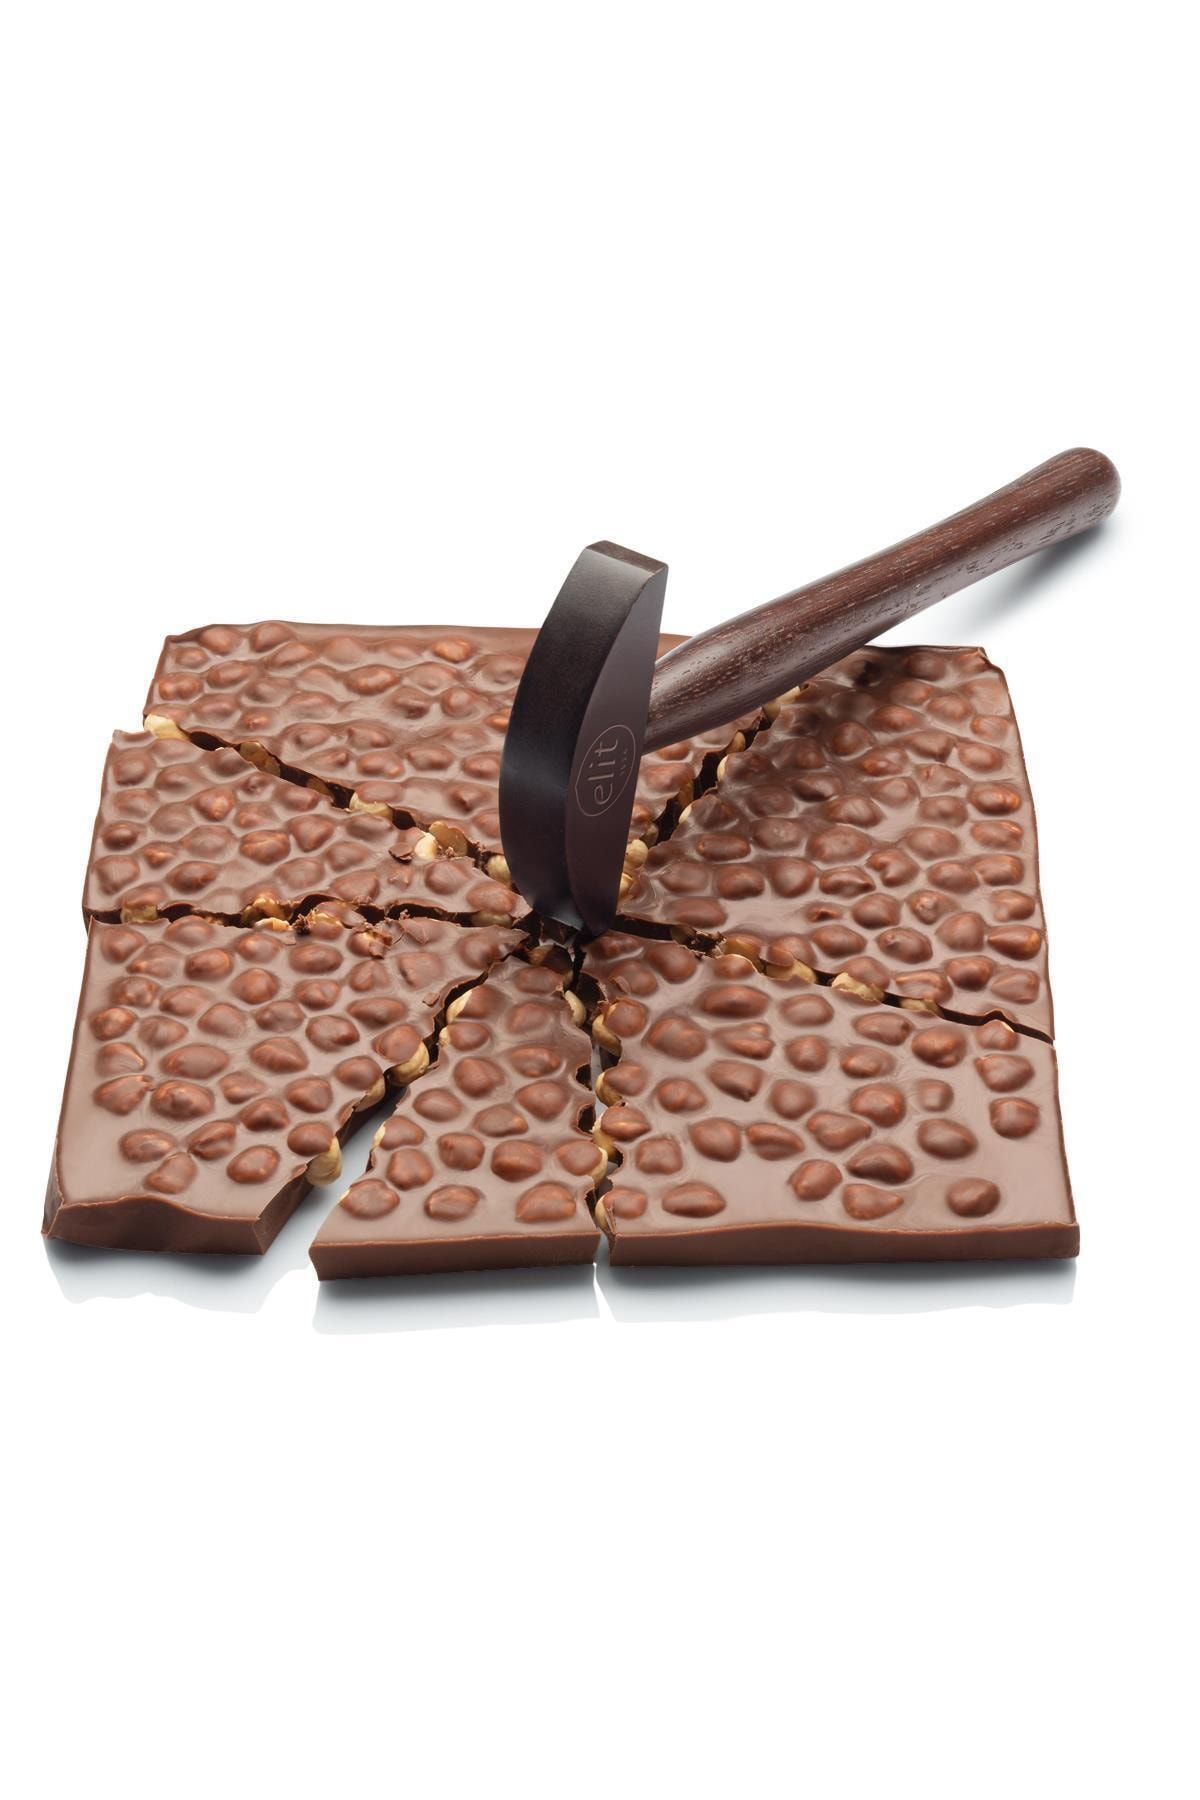 Elit Çikolata Tam Fındıklı Sütlü Tablet Beyoğlu Çikolatası Çekiçli Ahsap Kutu 600g Glutensiz